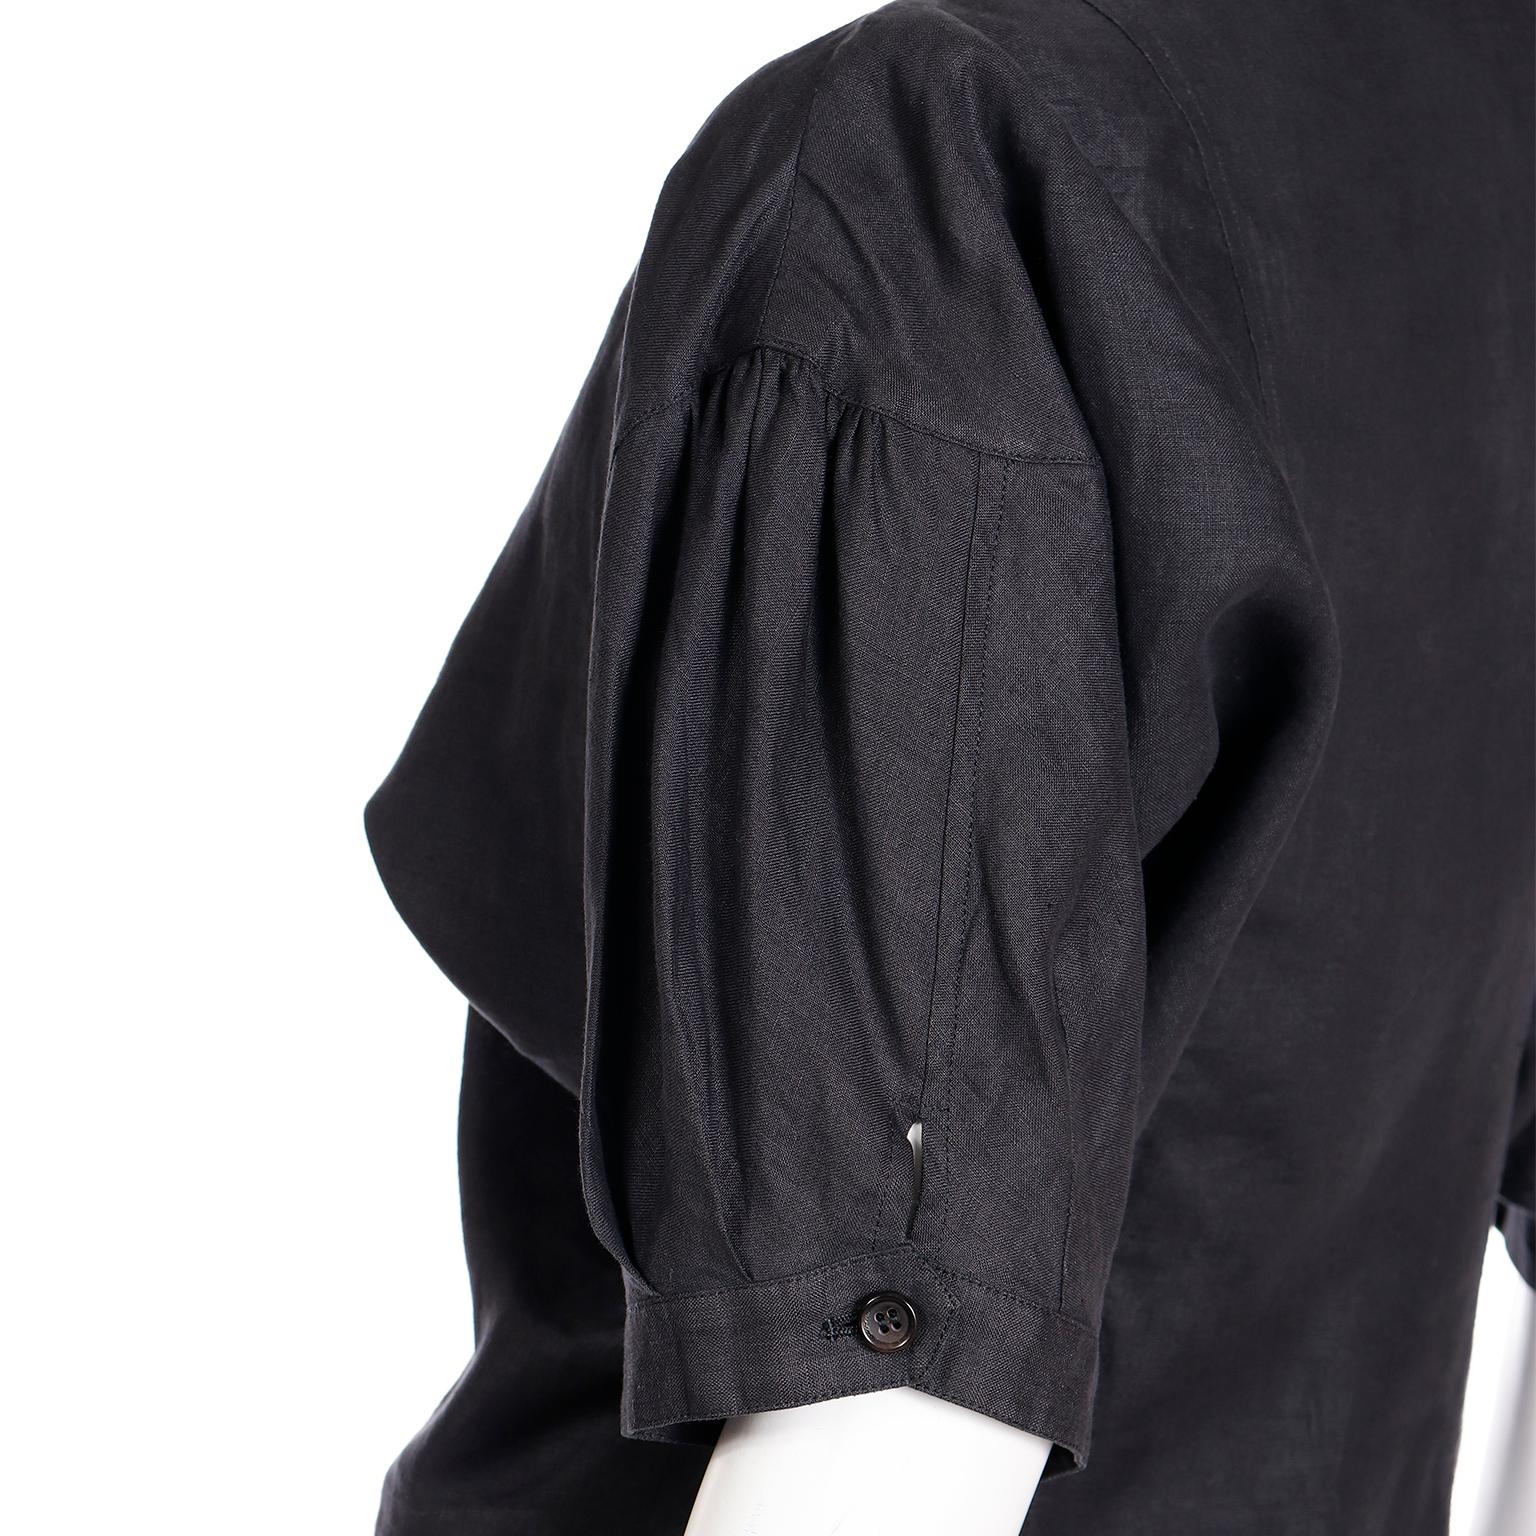 Comme des Garcons S/S 1989 Vintage Black Linen Jacket & Pants Outfit For Sale 11